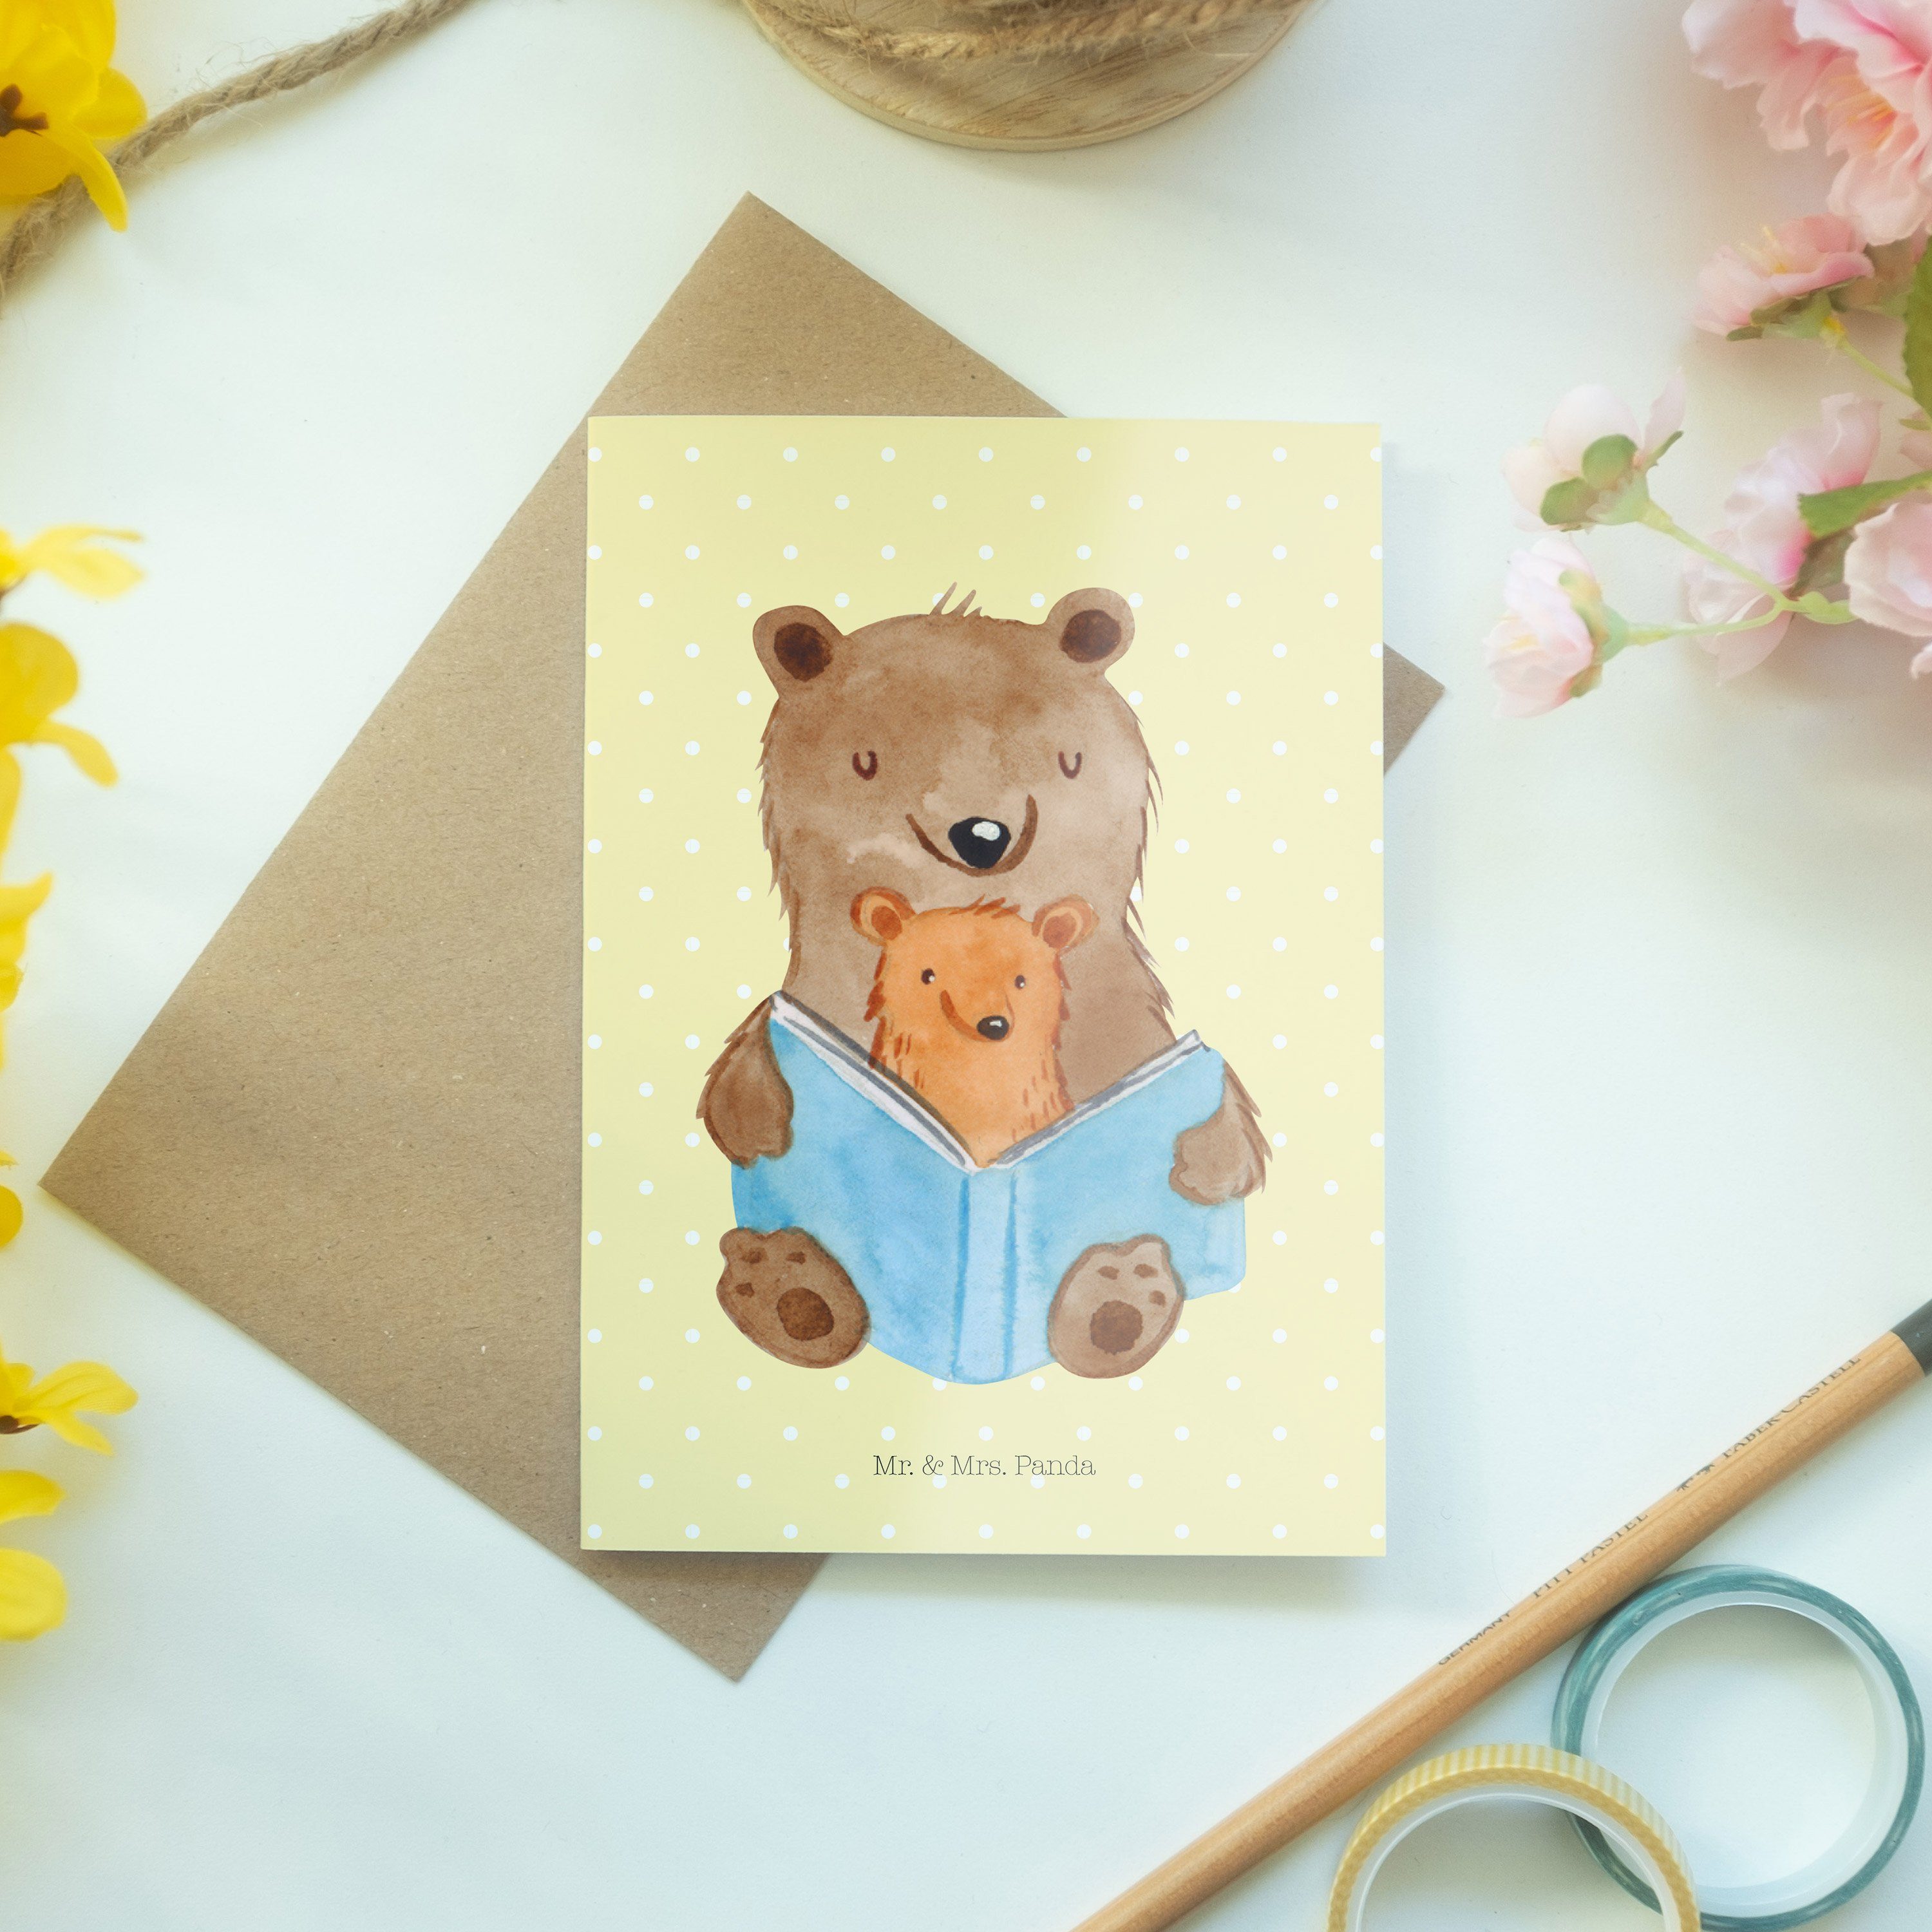 Mr. & Grußkarte Geschenk, Großmutter, Mrs. - Sc Panda Einladungskarte, Buch Bären Gelb - Pastell